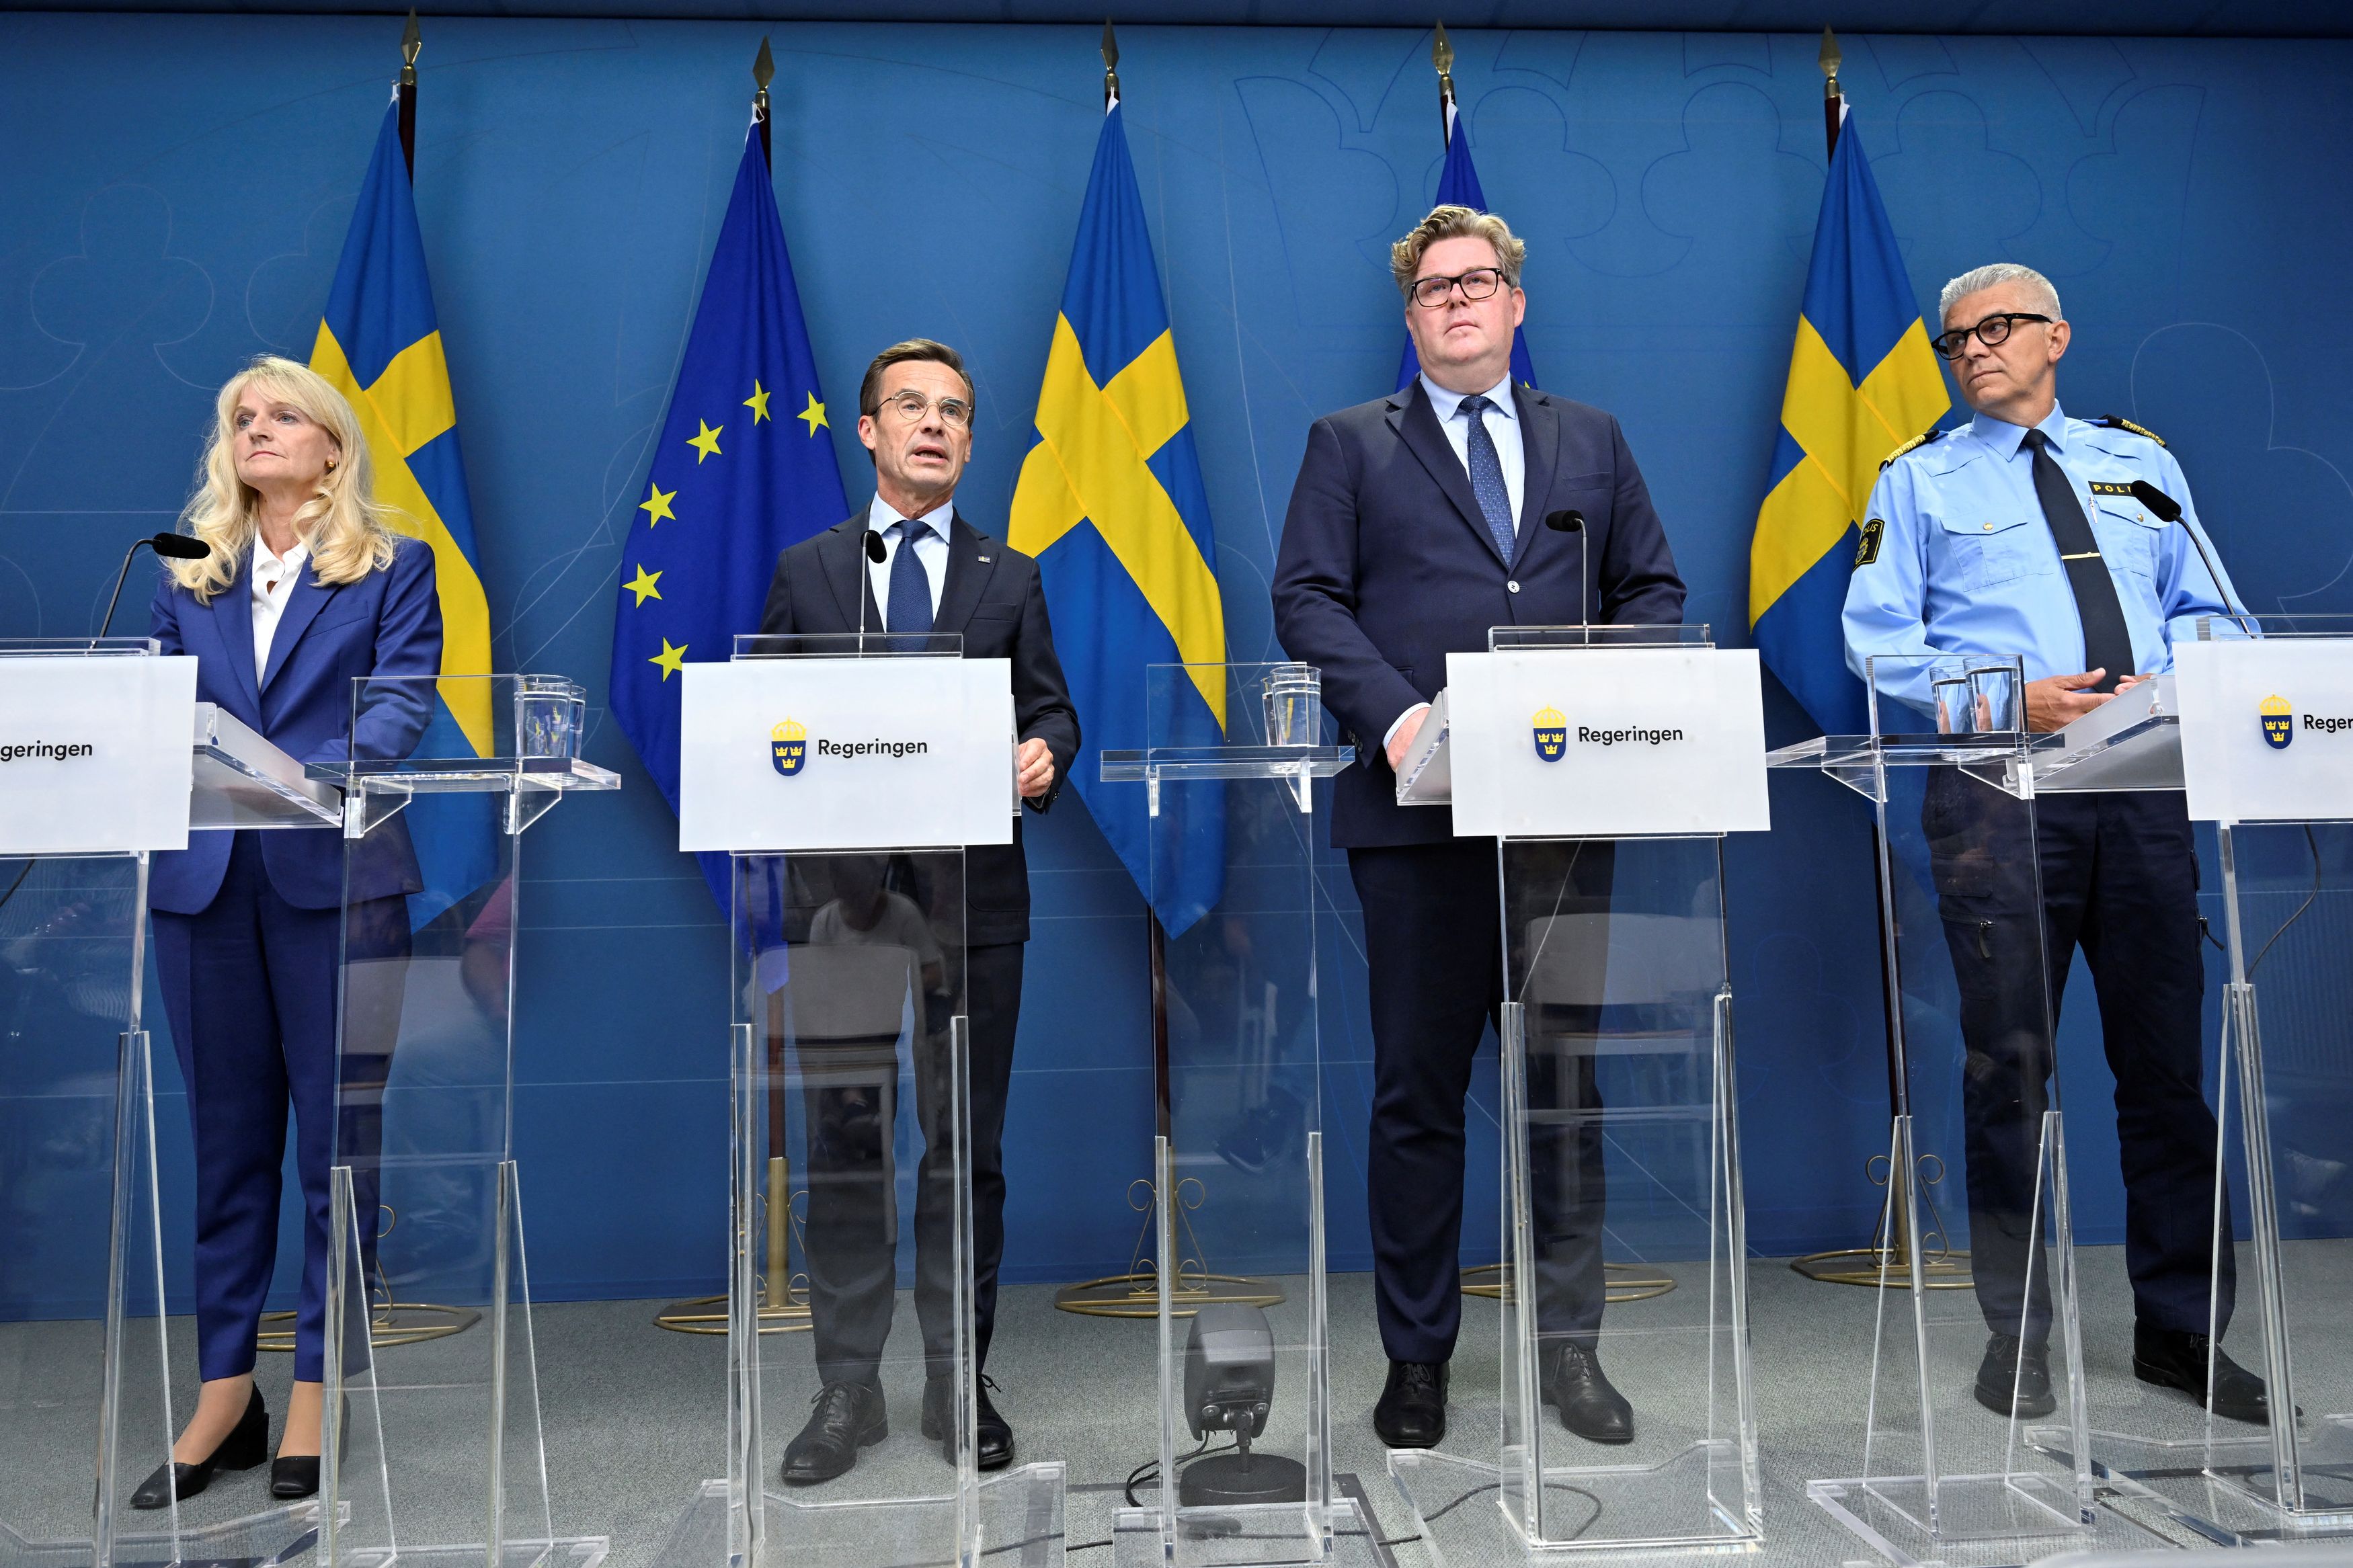 Σουηδία: Απετράπησαν τρομοκρατικές επιθέσεις, δηλώνει ο πρωθυπουργός Κρίστερσον